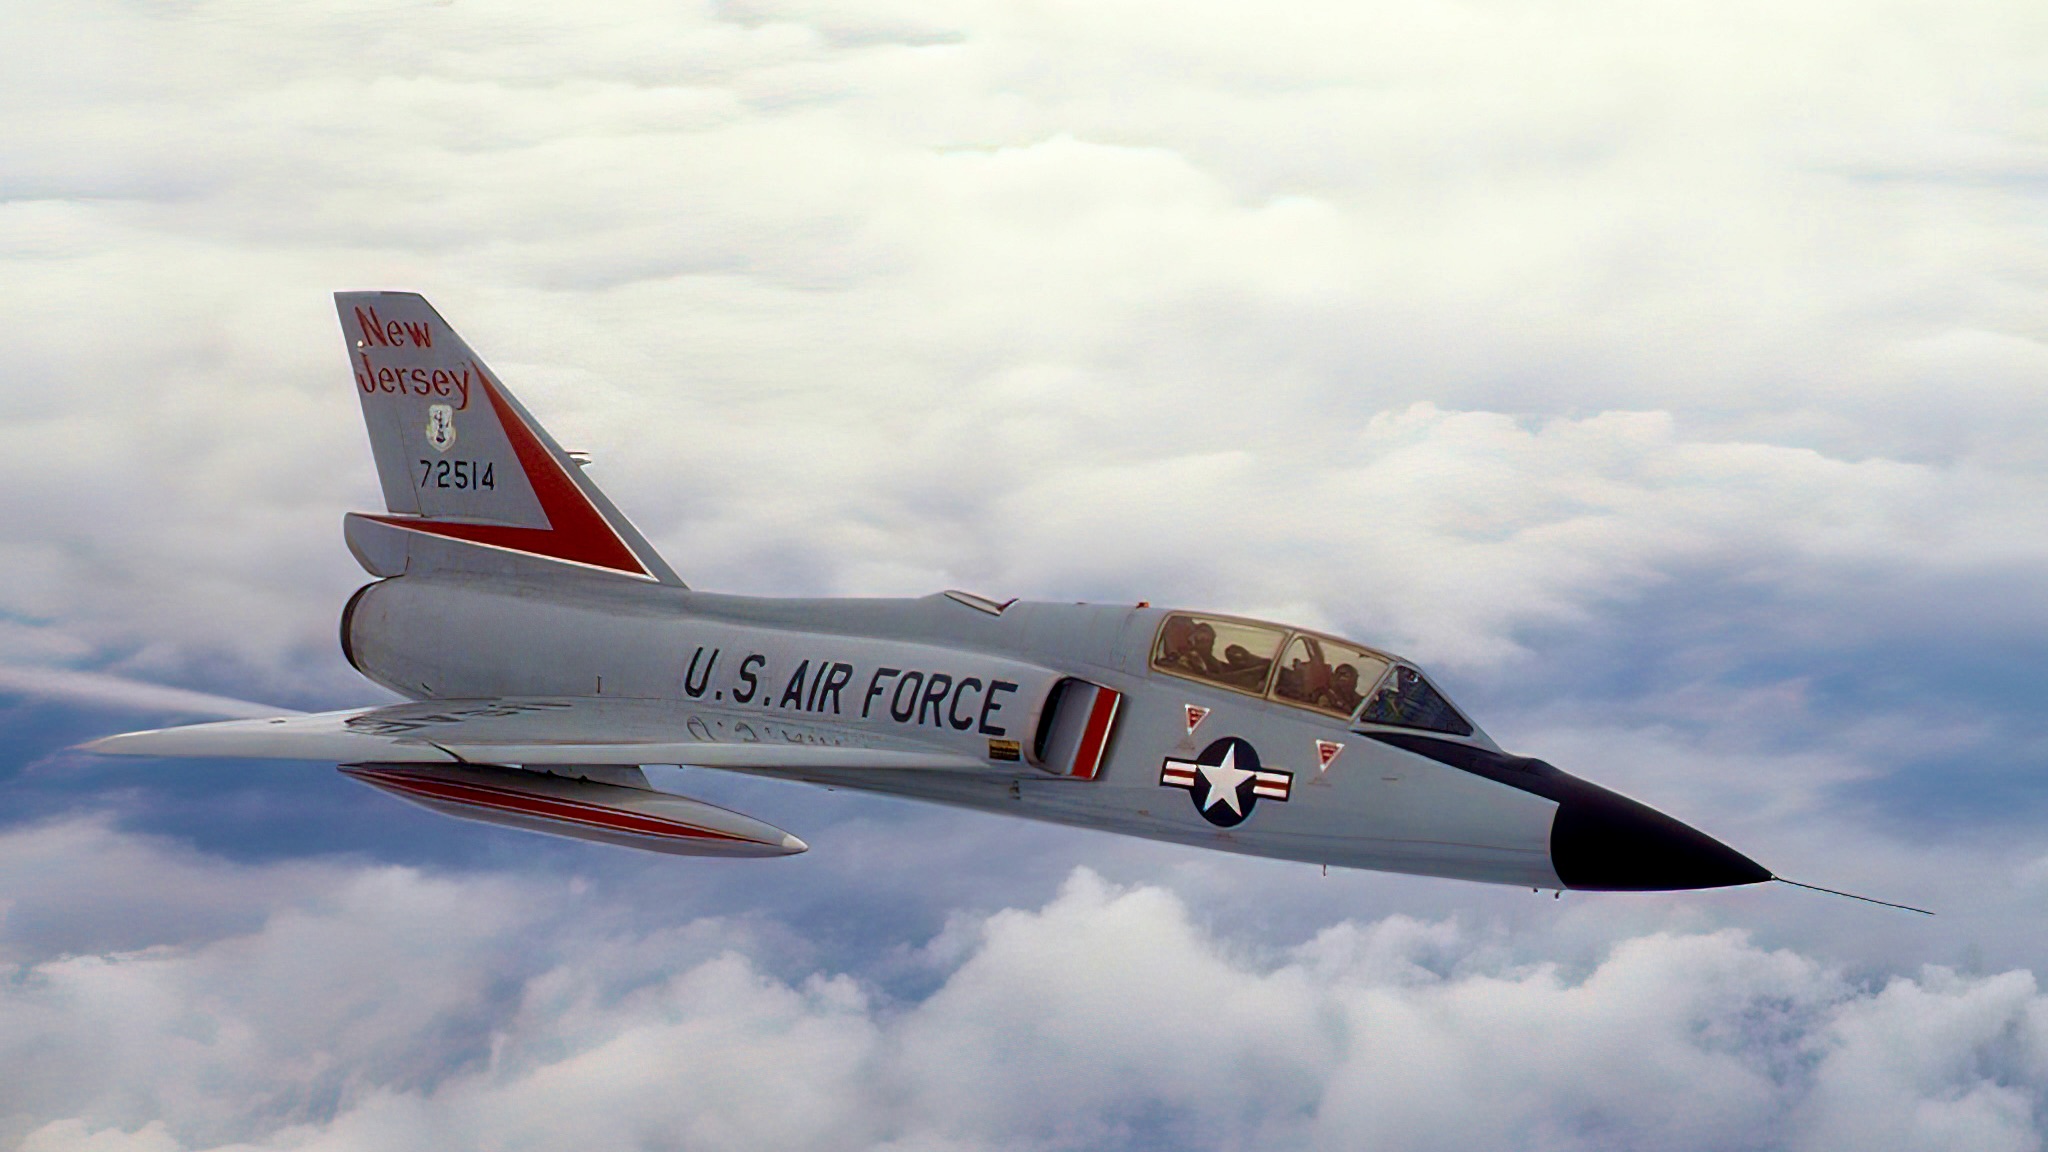 U.S. Air Force Convair F-106B-31-CO Delta Dart aircraft